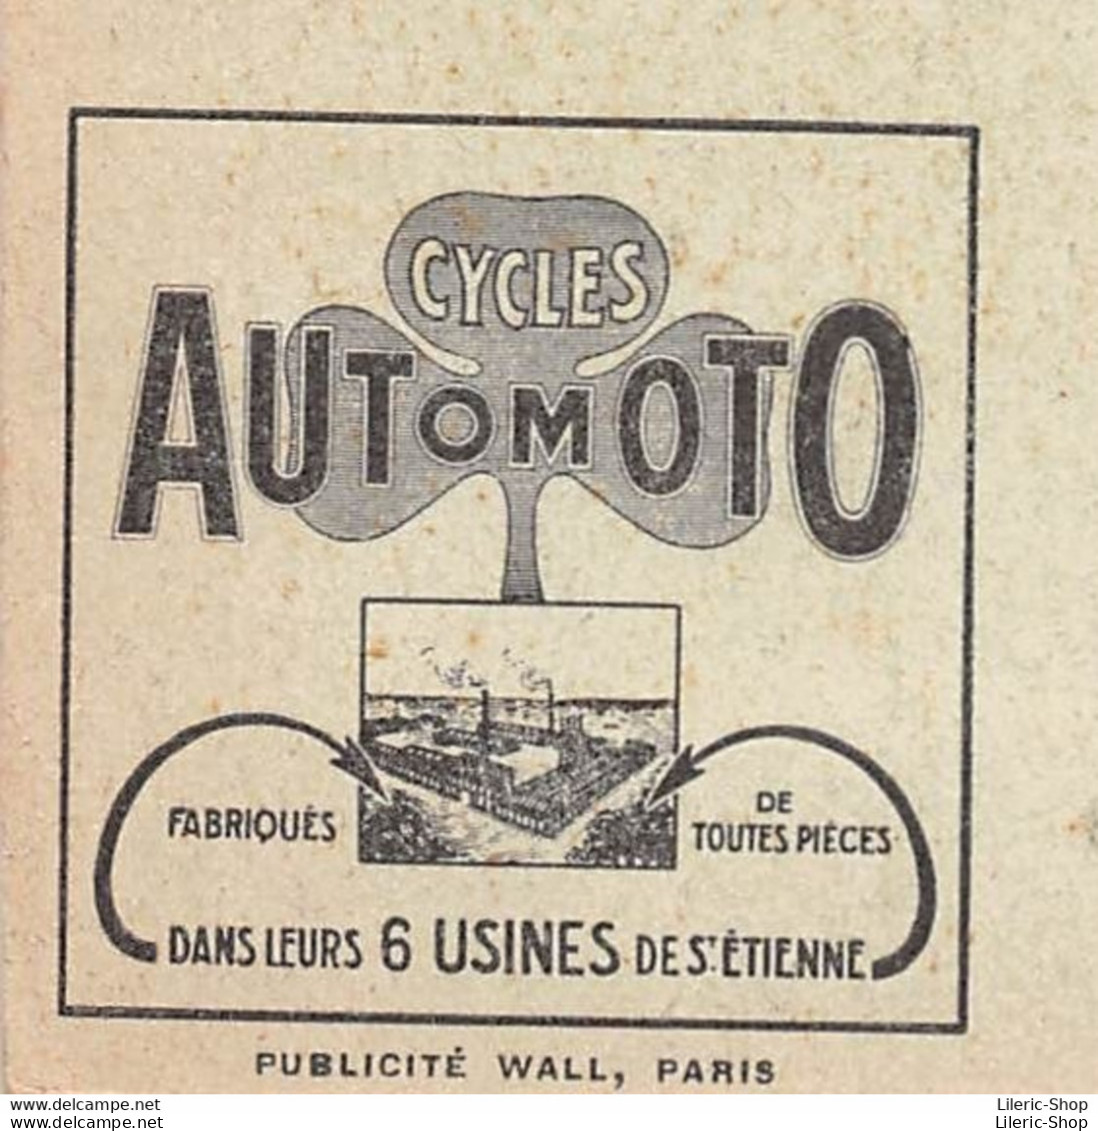 VINTAGE POSTCARD ±1930 - PUB.CYCLES AUTOMOTO ST-ÉTIENNE- Bologhine - Basilique Notre-Dame D'Afrique " Lalla Meryem" - Advertising